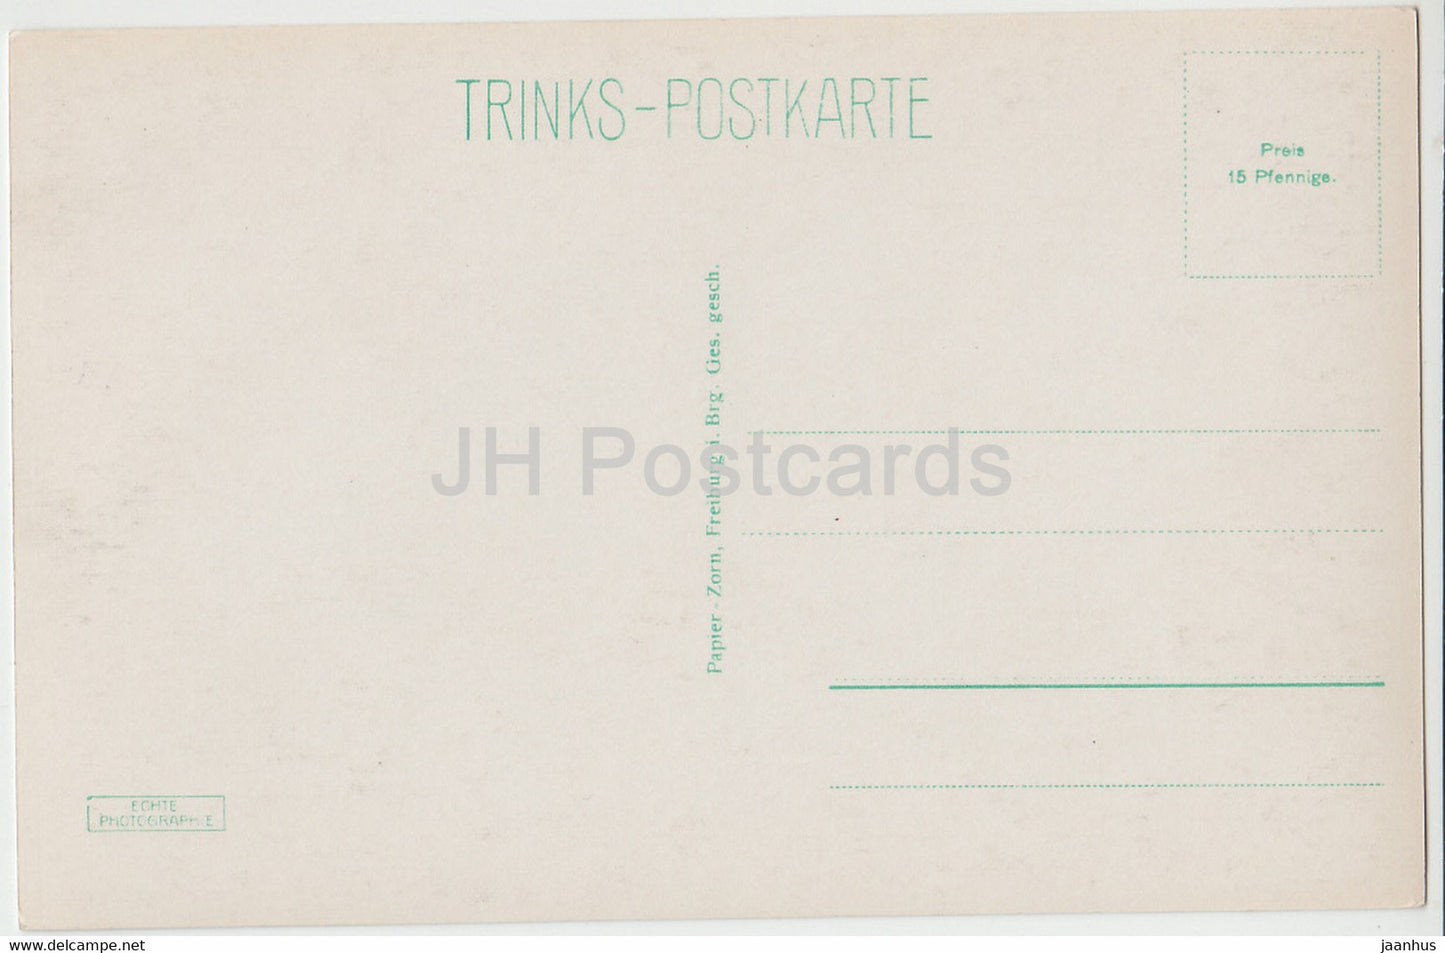 Freiburg i. Breisgau - Kaufhaus - 11 - alte Postkarte - Deutschland - unbenutzt